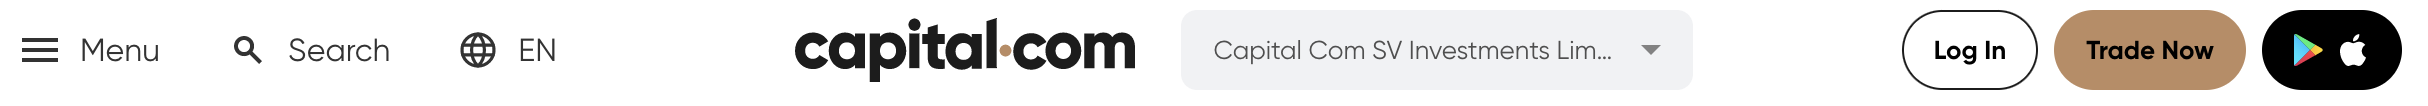 ที่ Capital.com คุณสามารถเปิดบัญชีได้โดยคลิกที่ "ซื้อขายเลย" ที่ด้านบนของเว็บไซต์